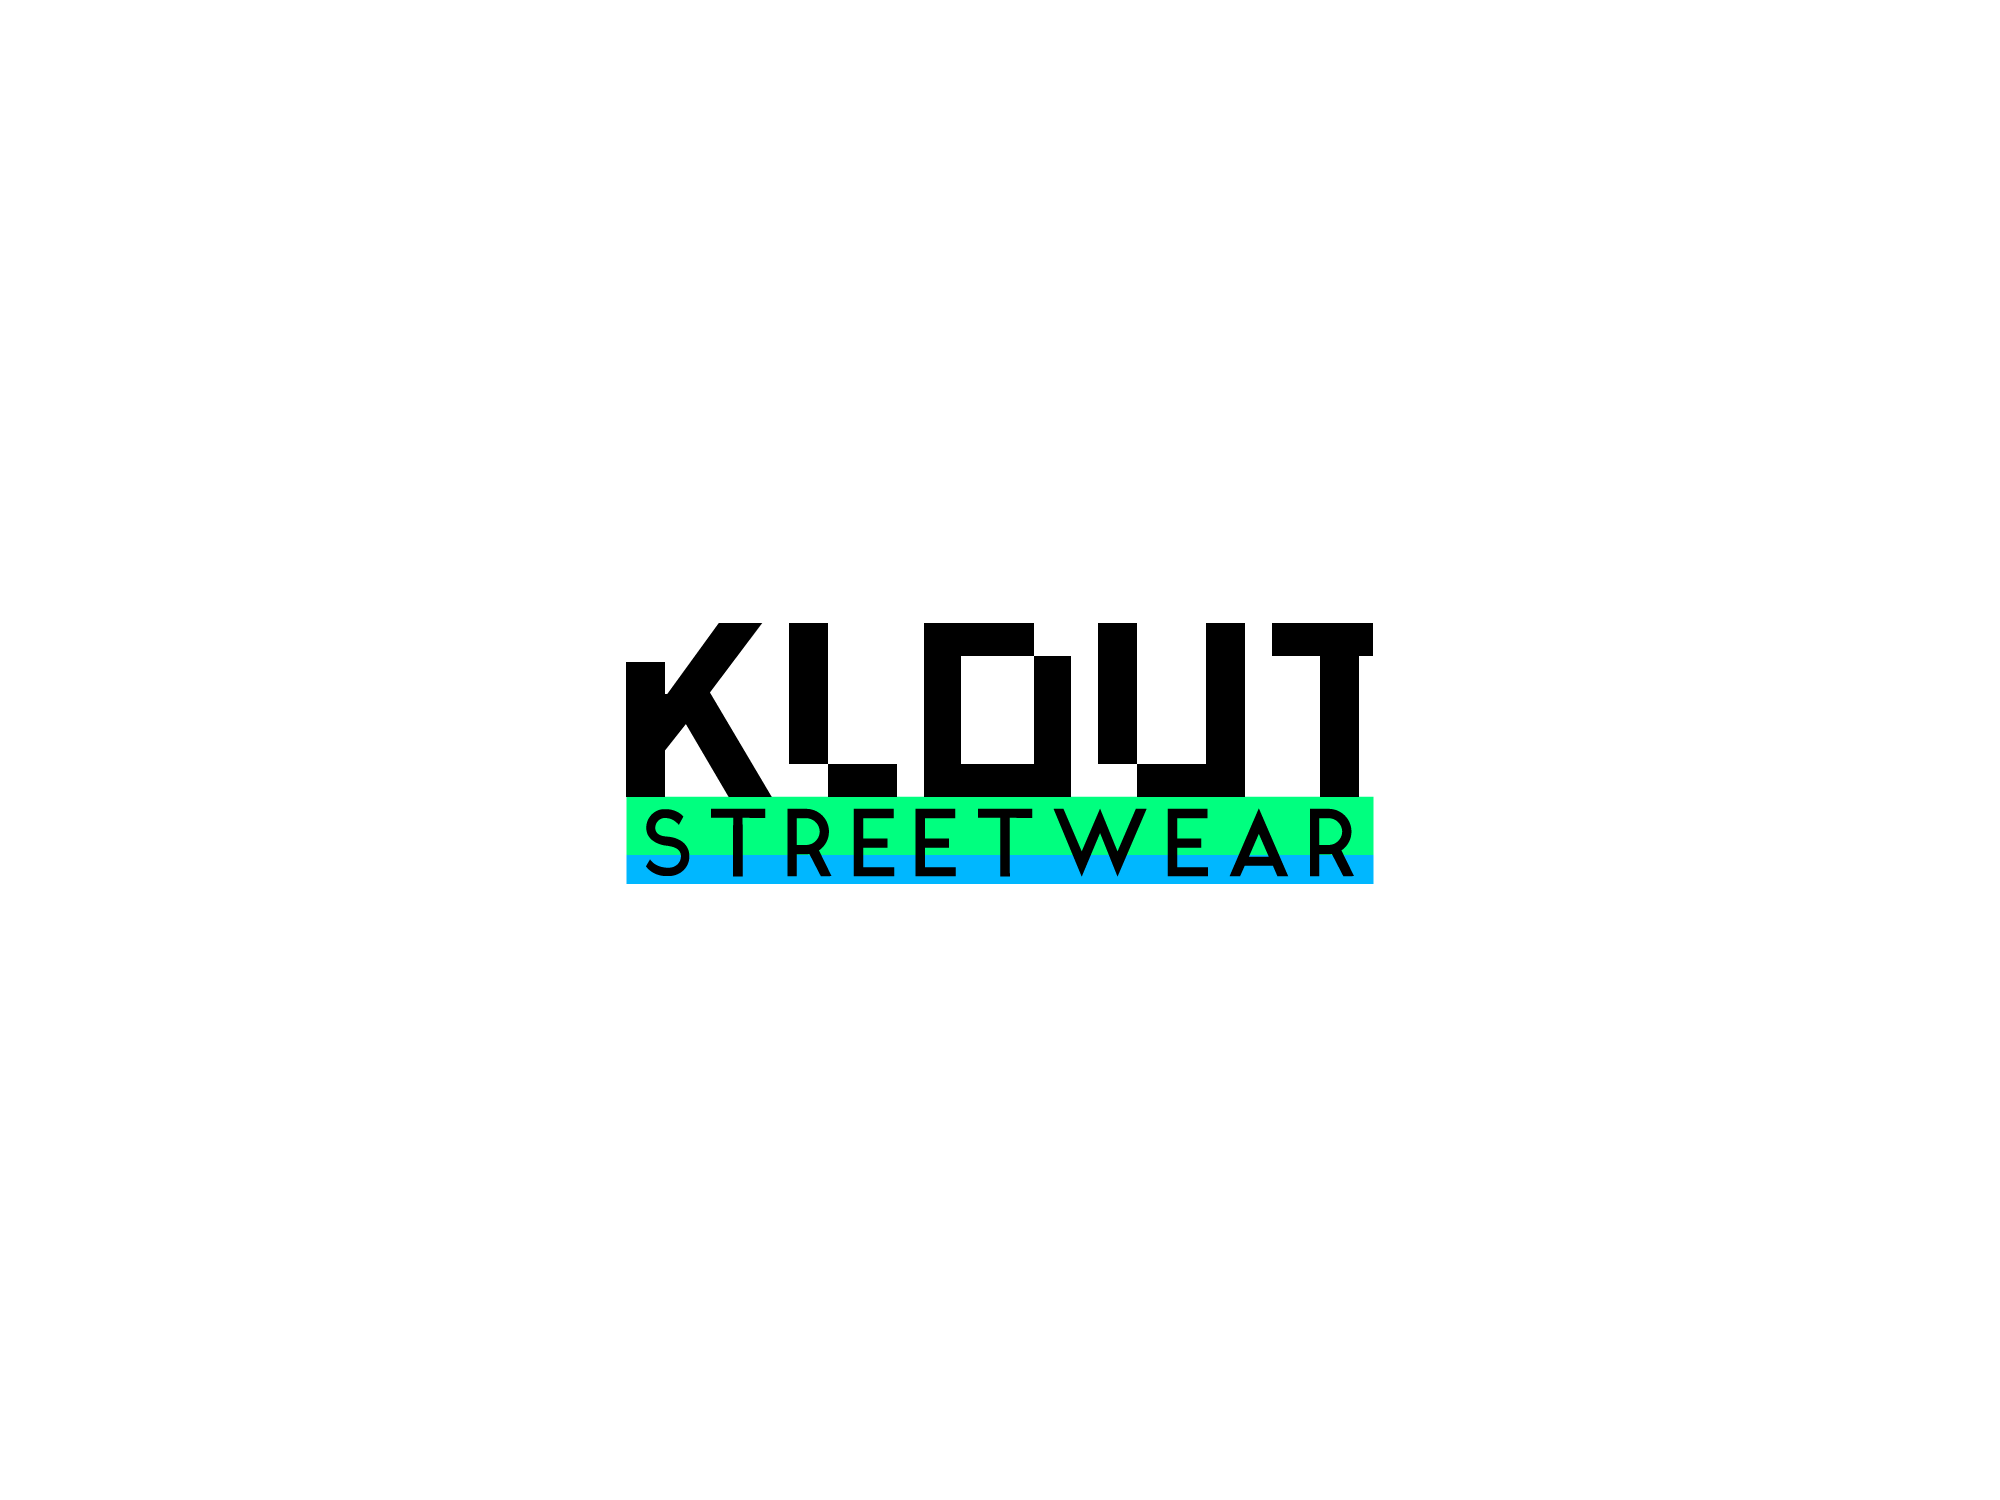 Klout Logo - KLOUT Streetwear by Pratik Arya on Dribbble